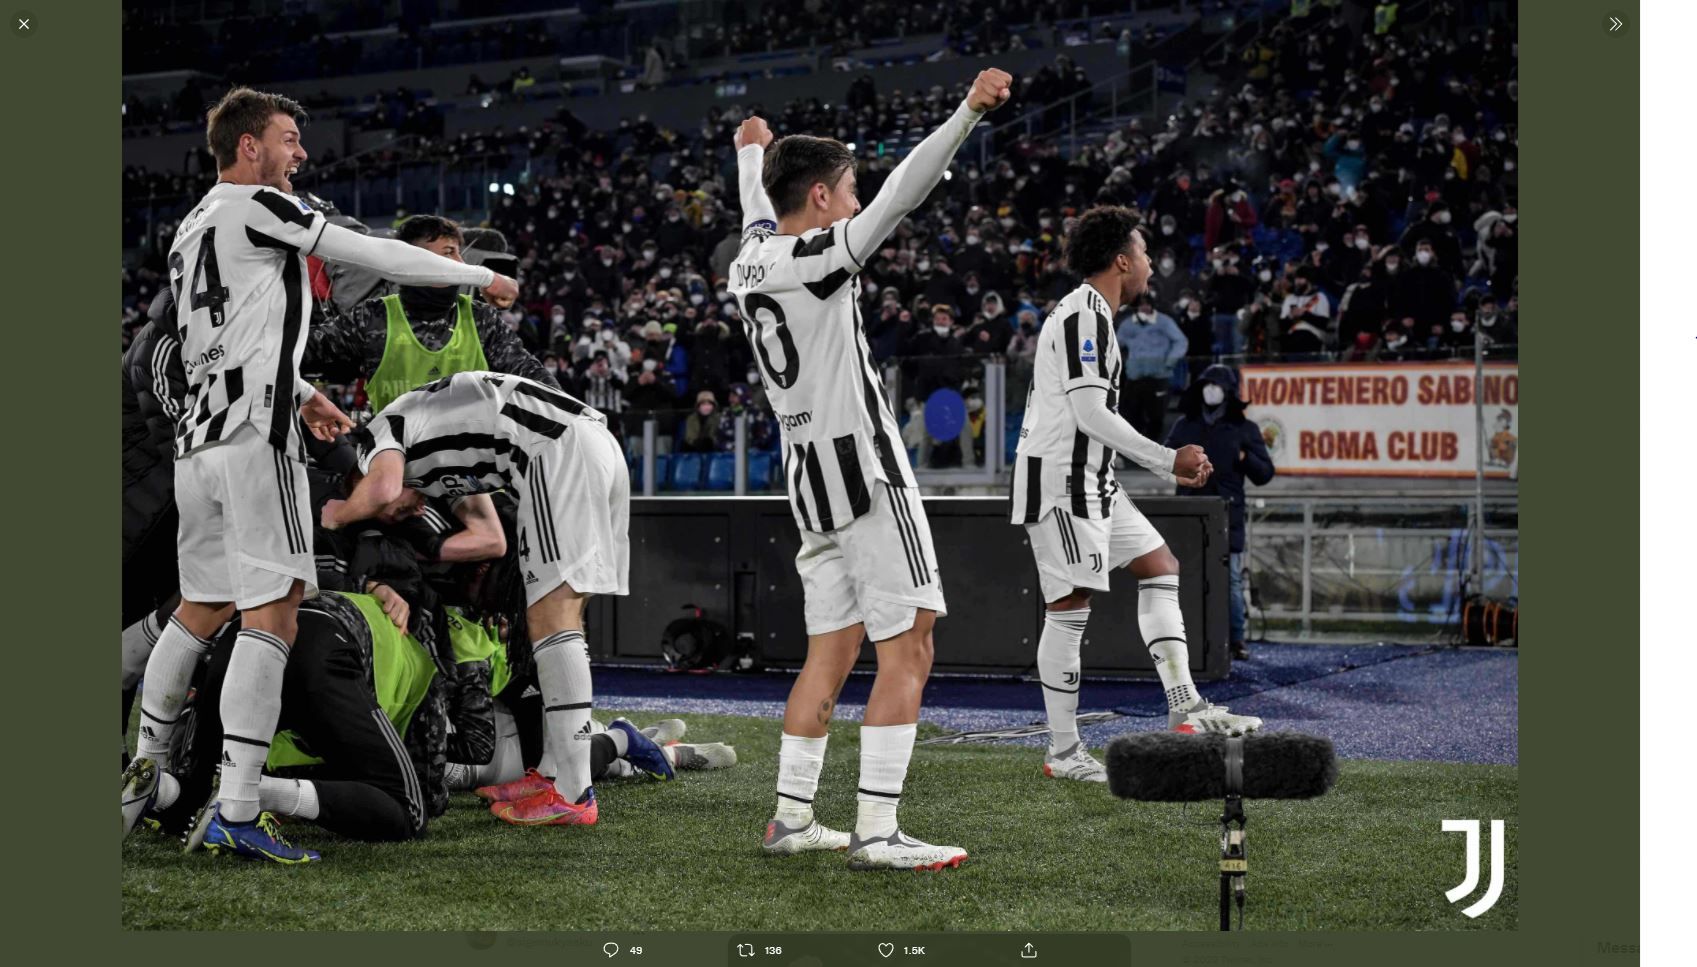 Kiper Juventus Minta Pemain yang Tak Niat Main di Rumah Saja